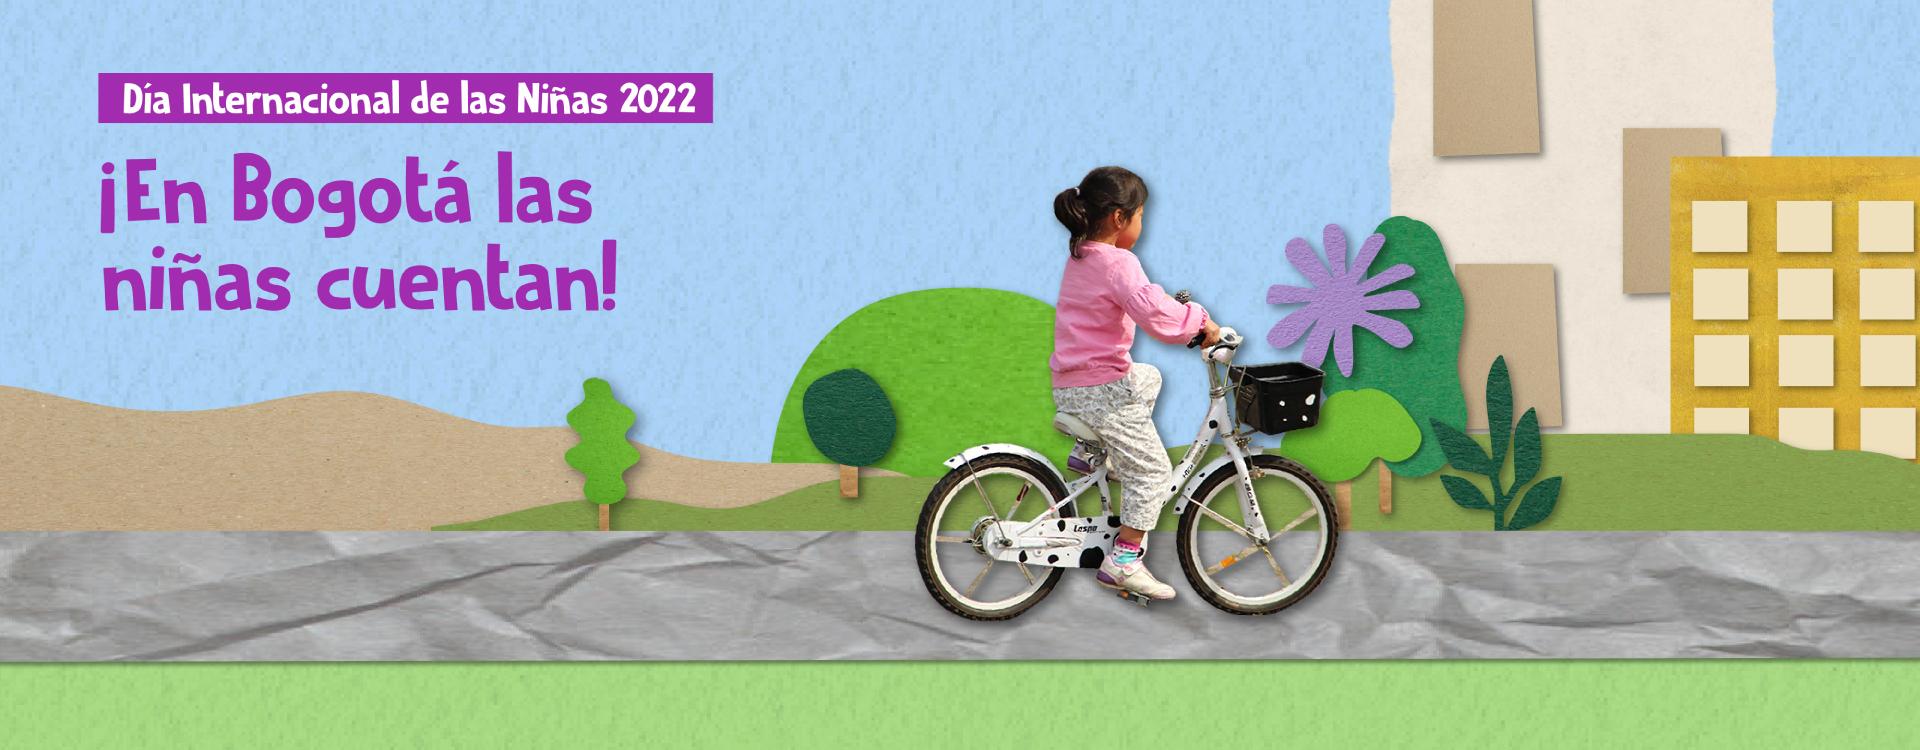 imagen con ilustración de niña montando cicla